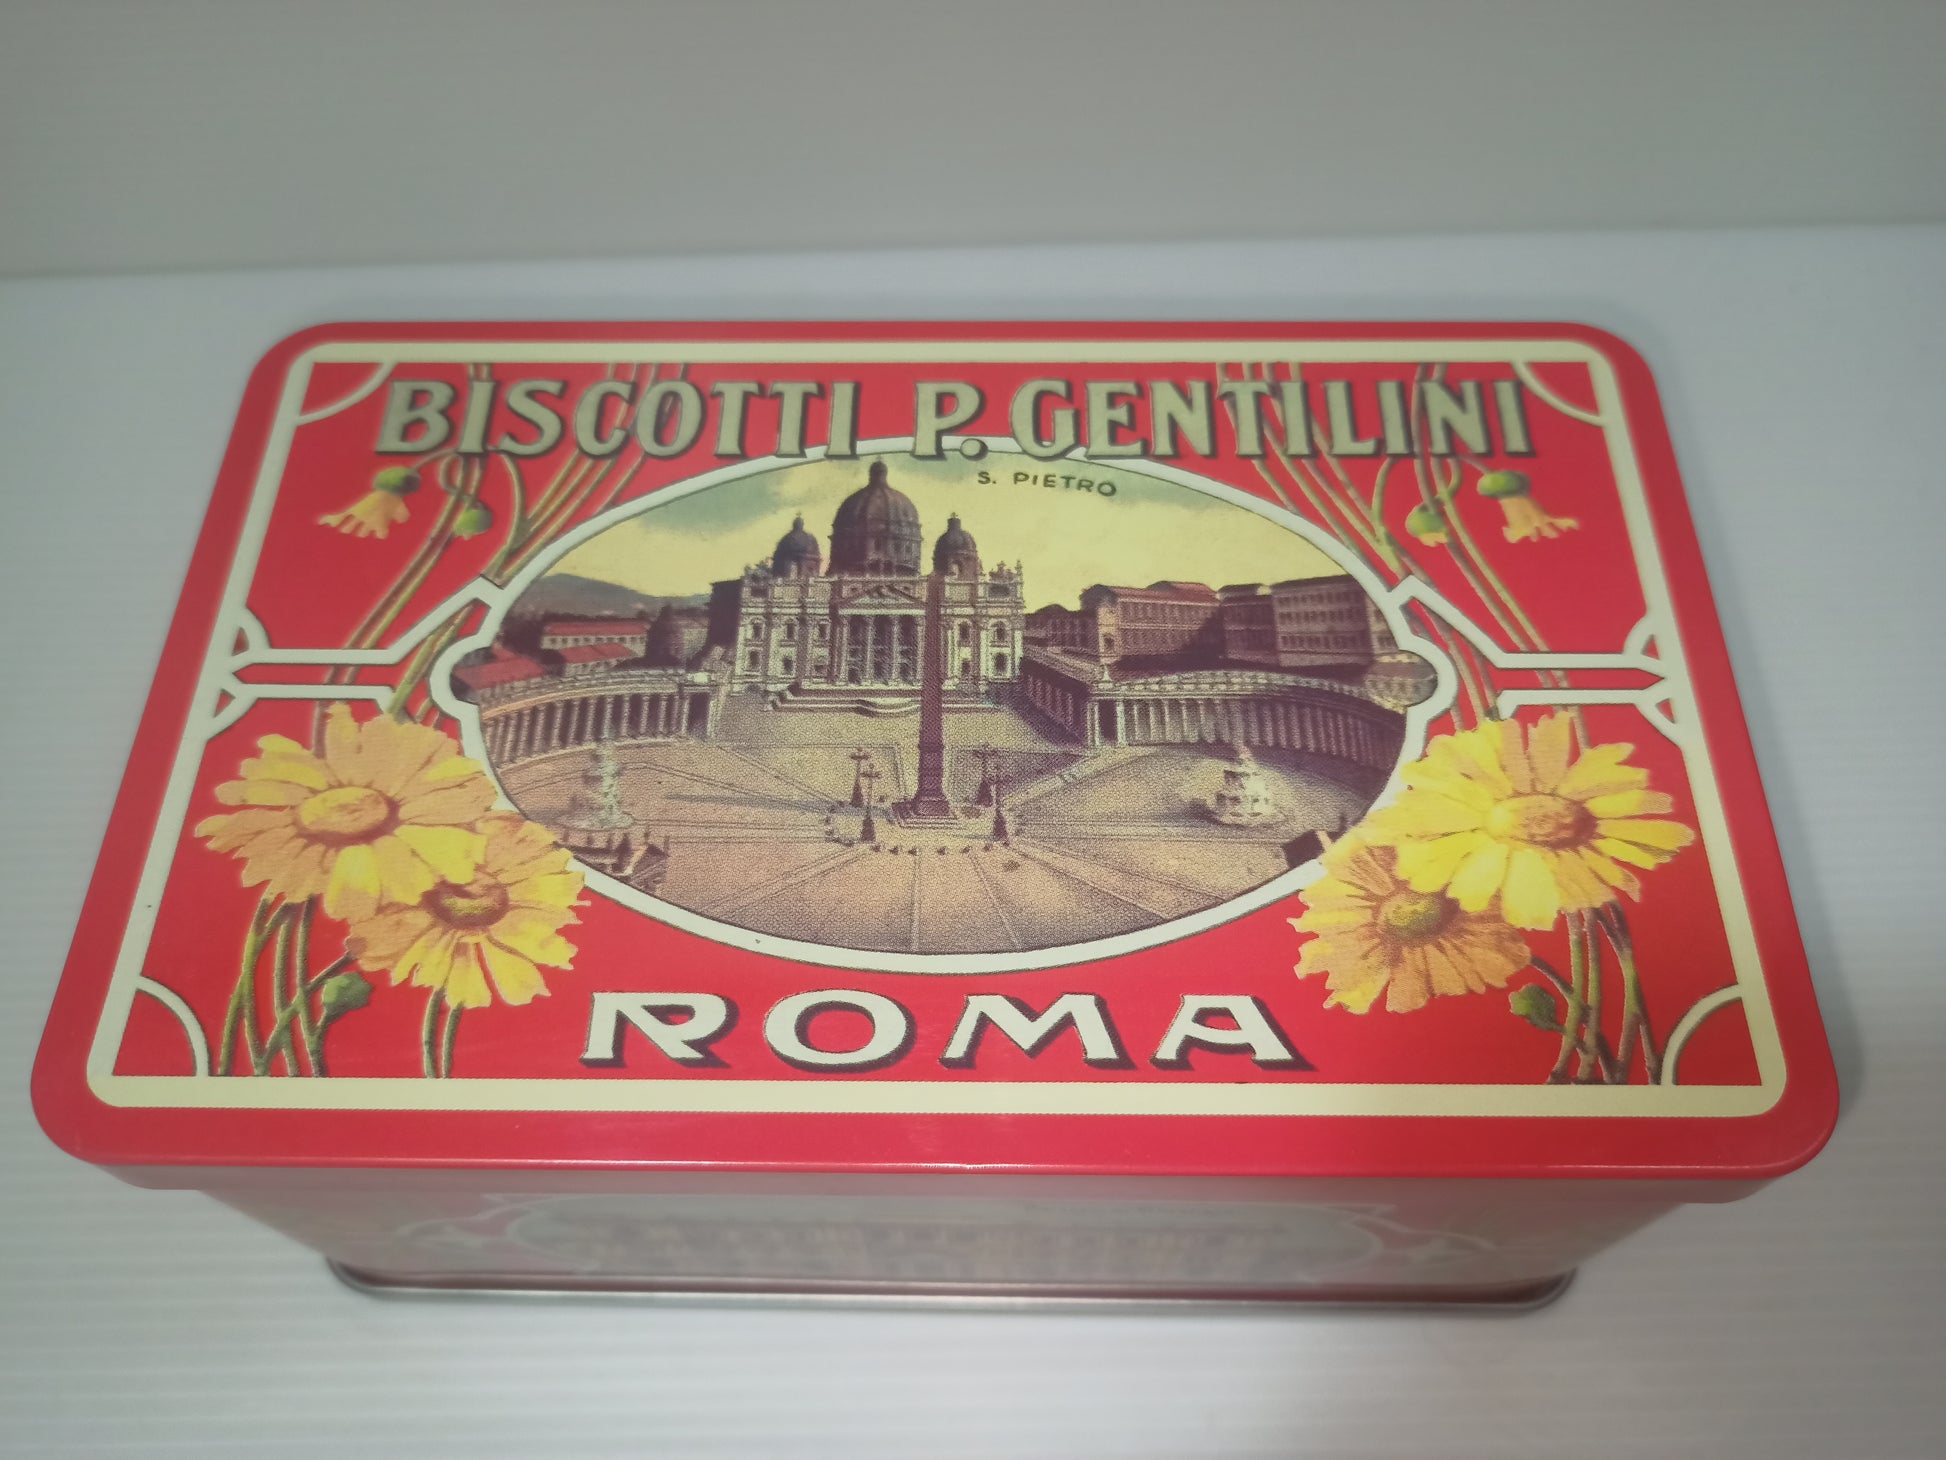 RIPRODUZIONE scatola latta Biscotti P. Gentilini Roma – LUDOteca e dintorni